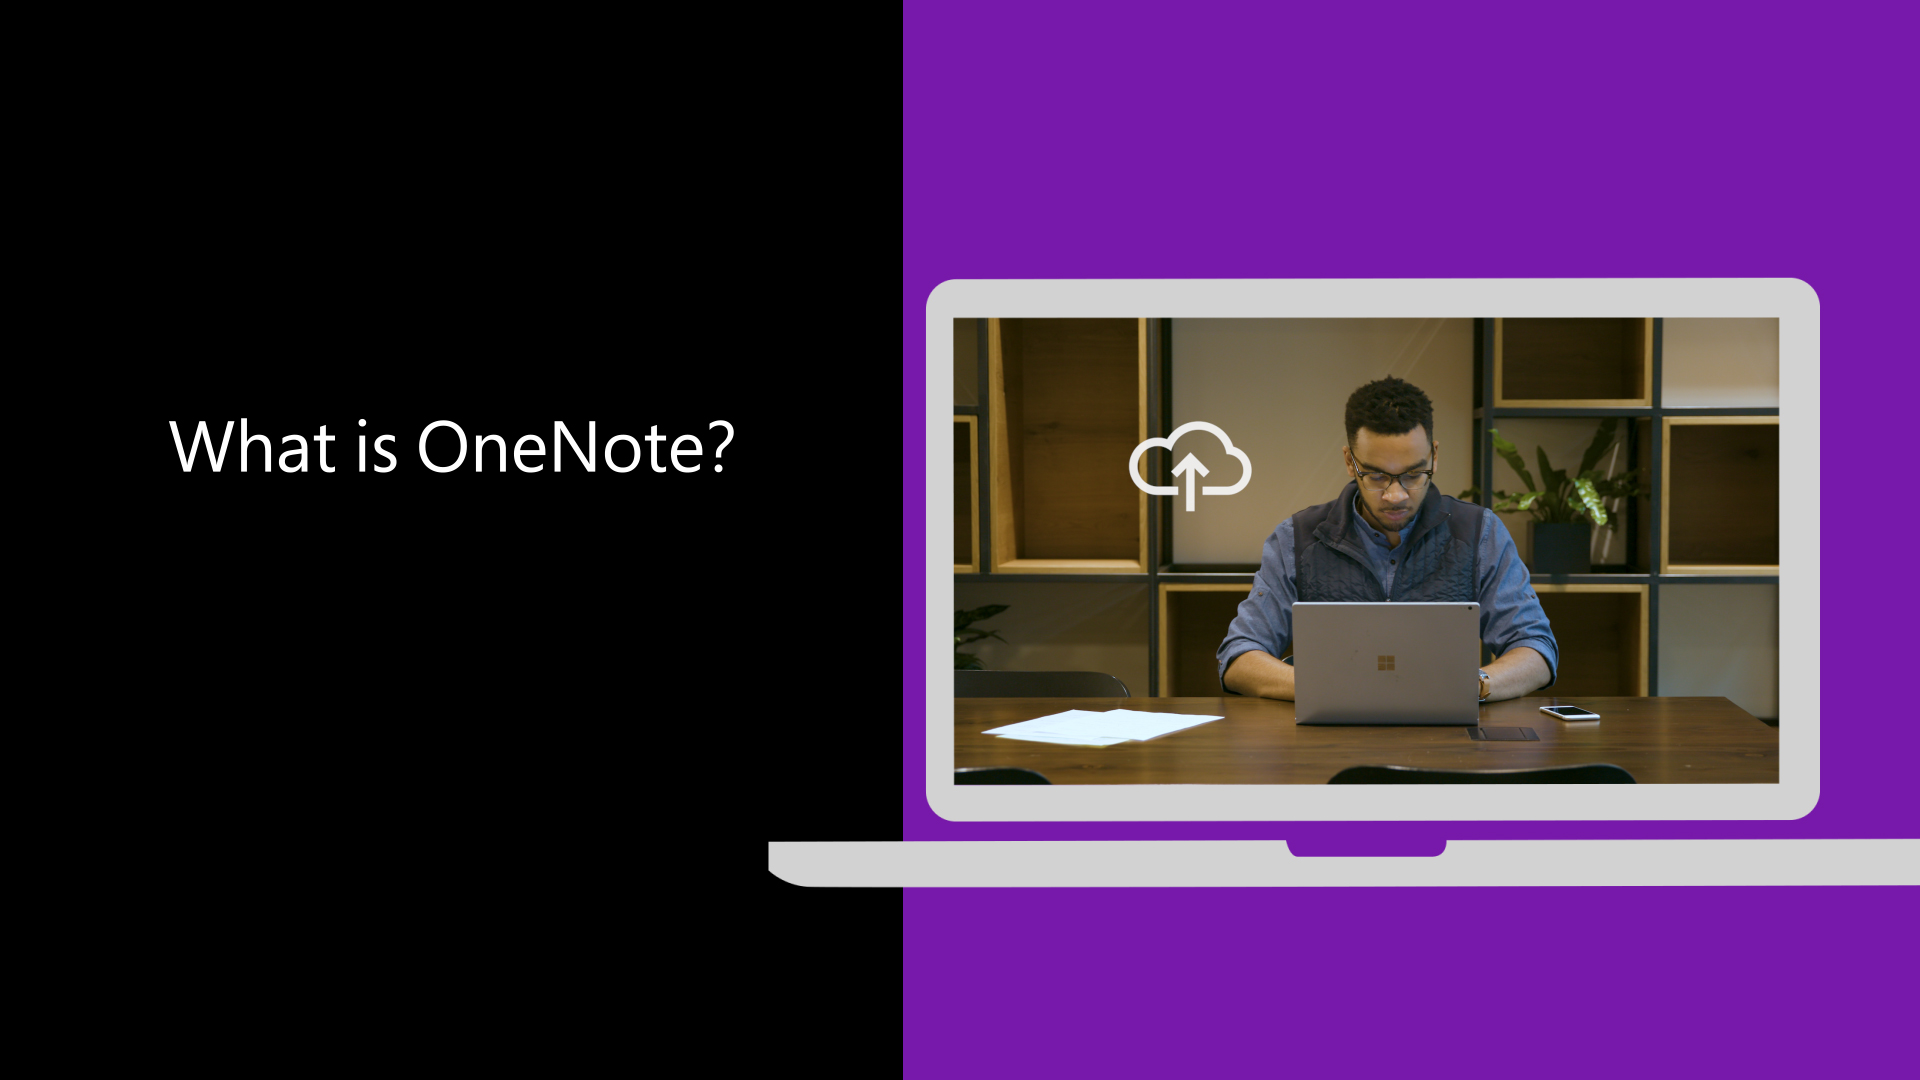 Créer un bloc-notes dans OneNote - Support Microsoft